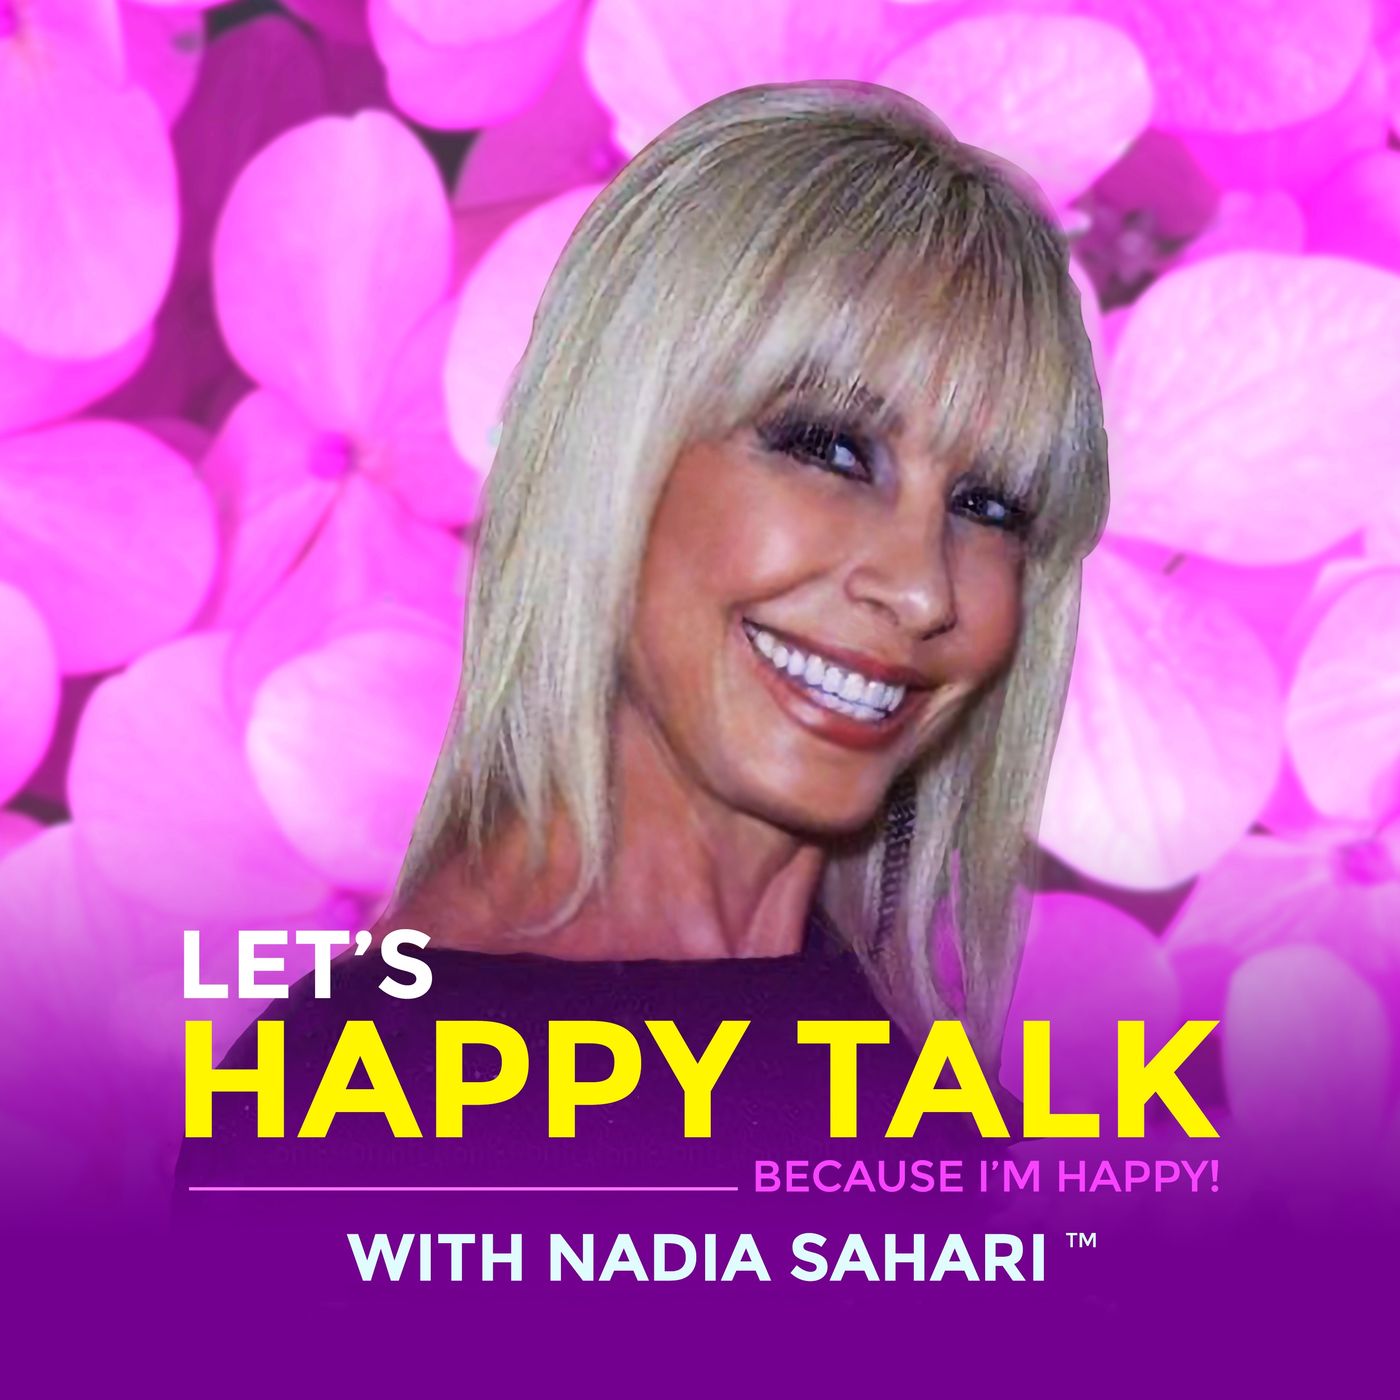 LET'S HAPPY TALK! "Because I'm Happy!" With Nadia Sahari